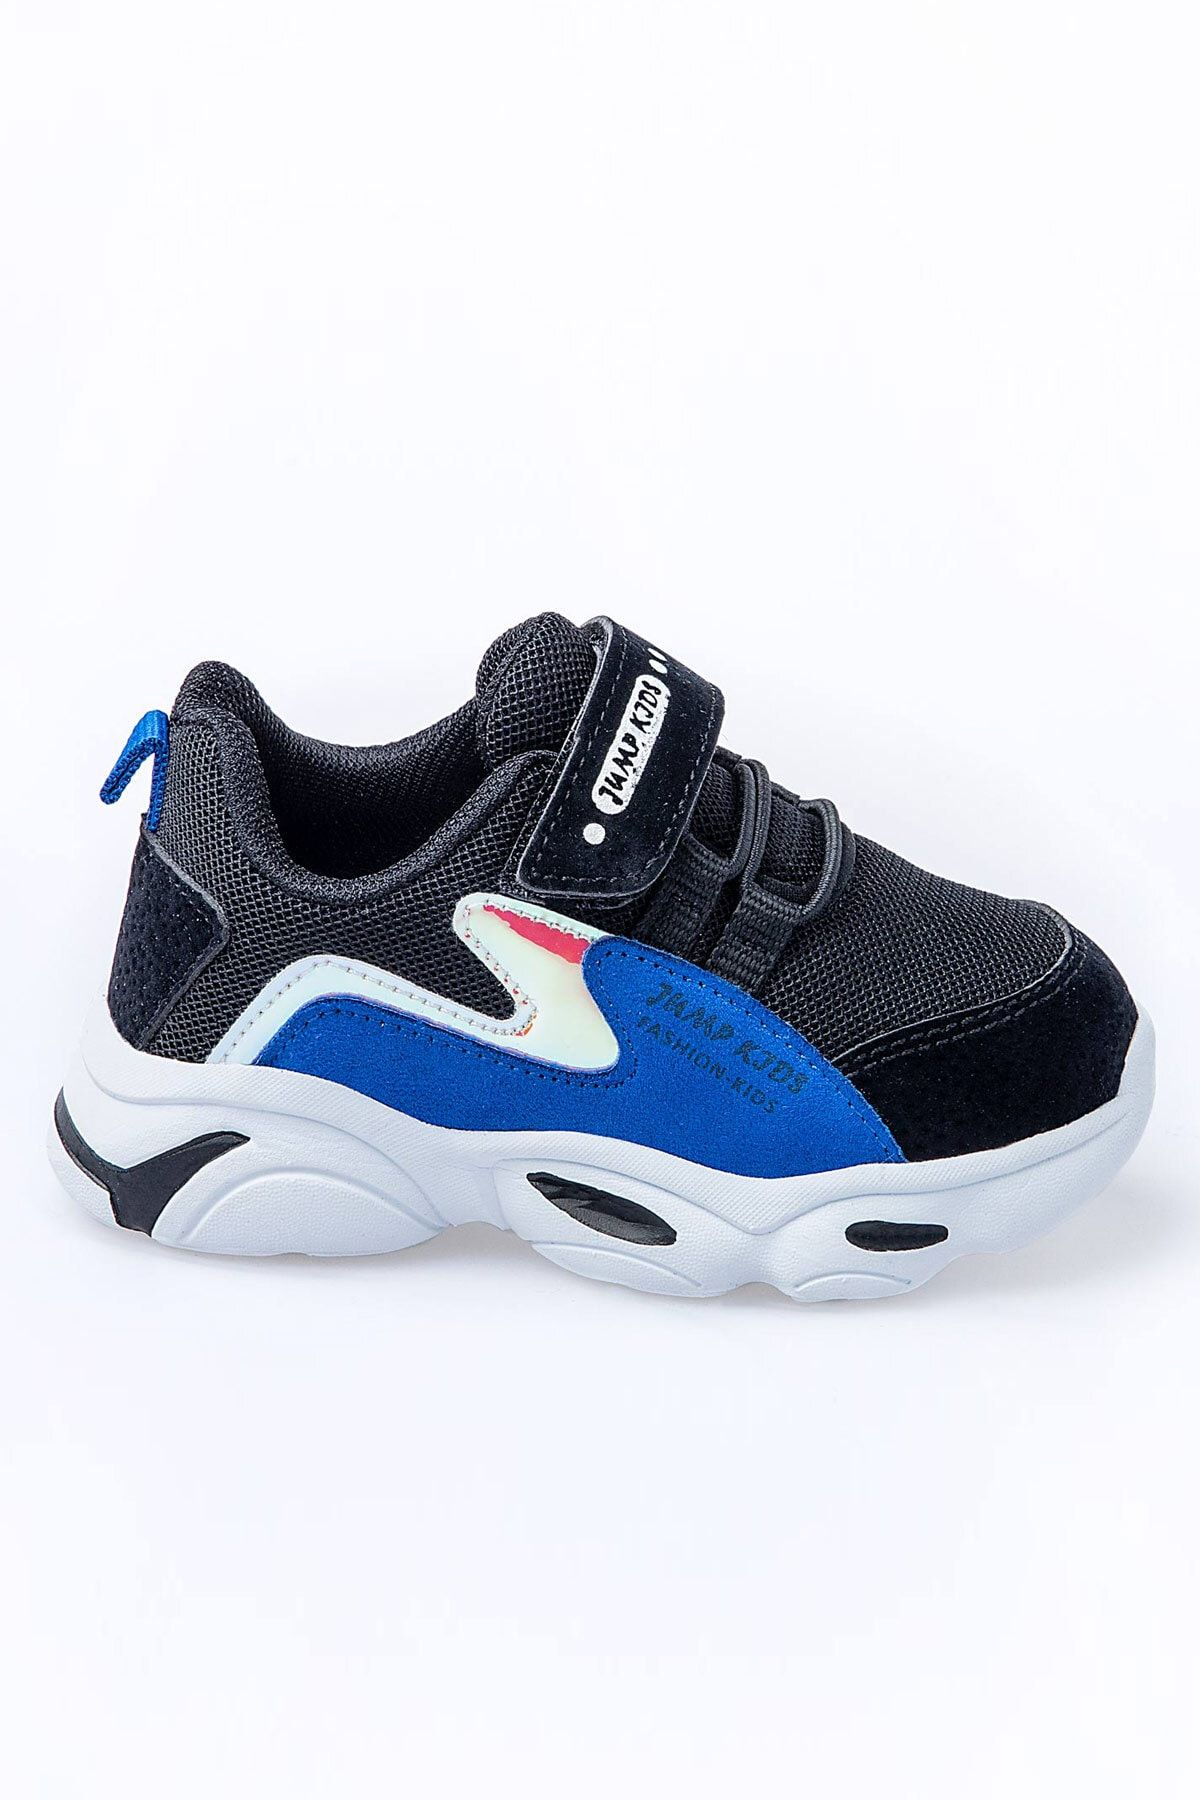 Jump 25833 Siyah - Royal Mavi Uniseks Çocuk Yazlık Günlük Rahat Yürüyüş Sneaker Spor Ayakkabı